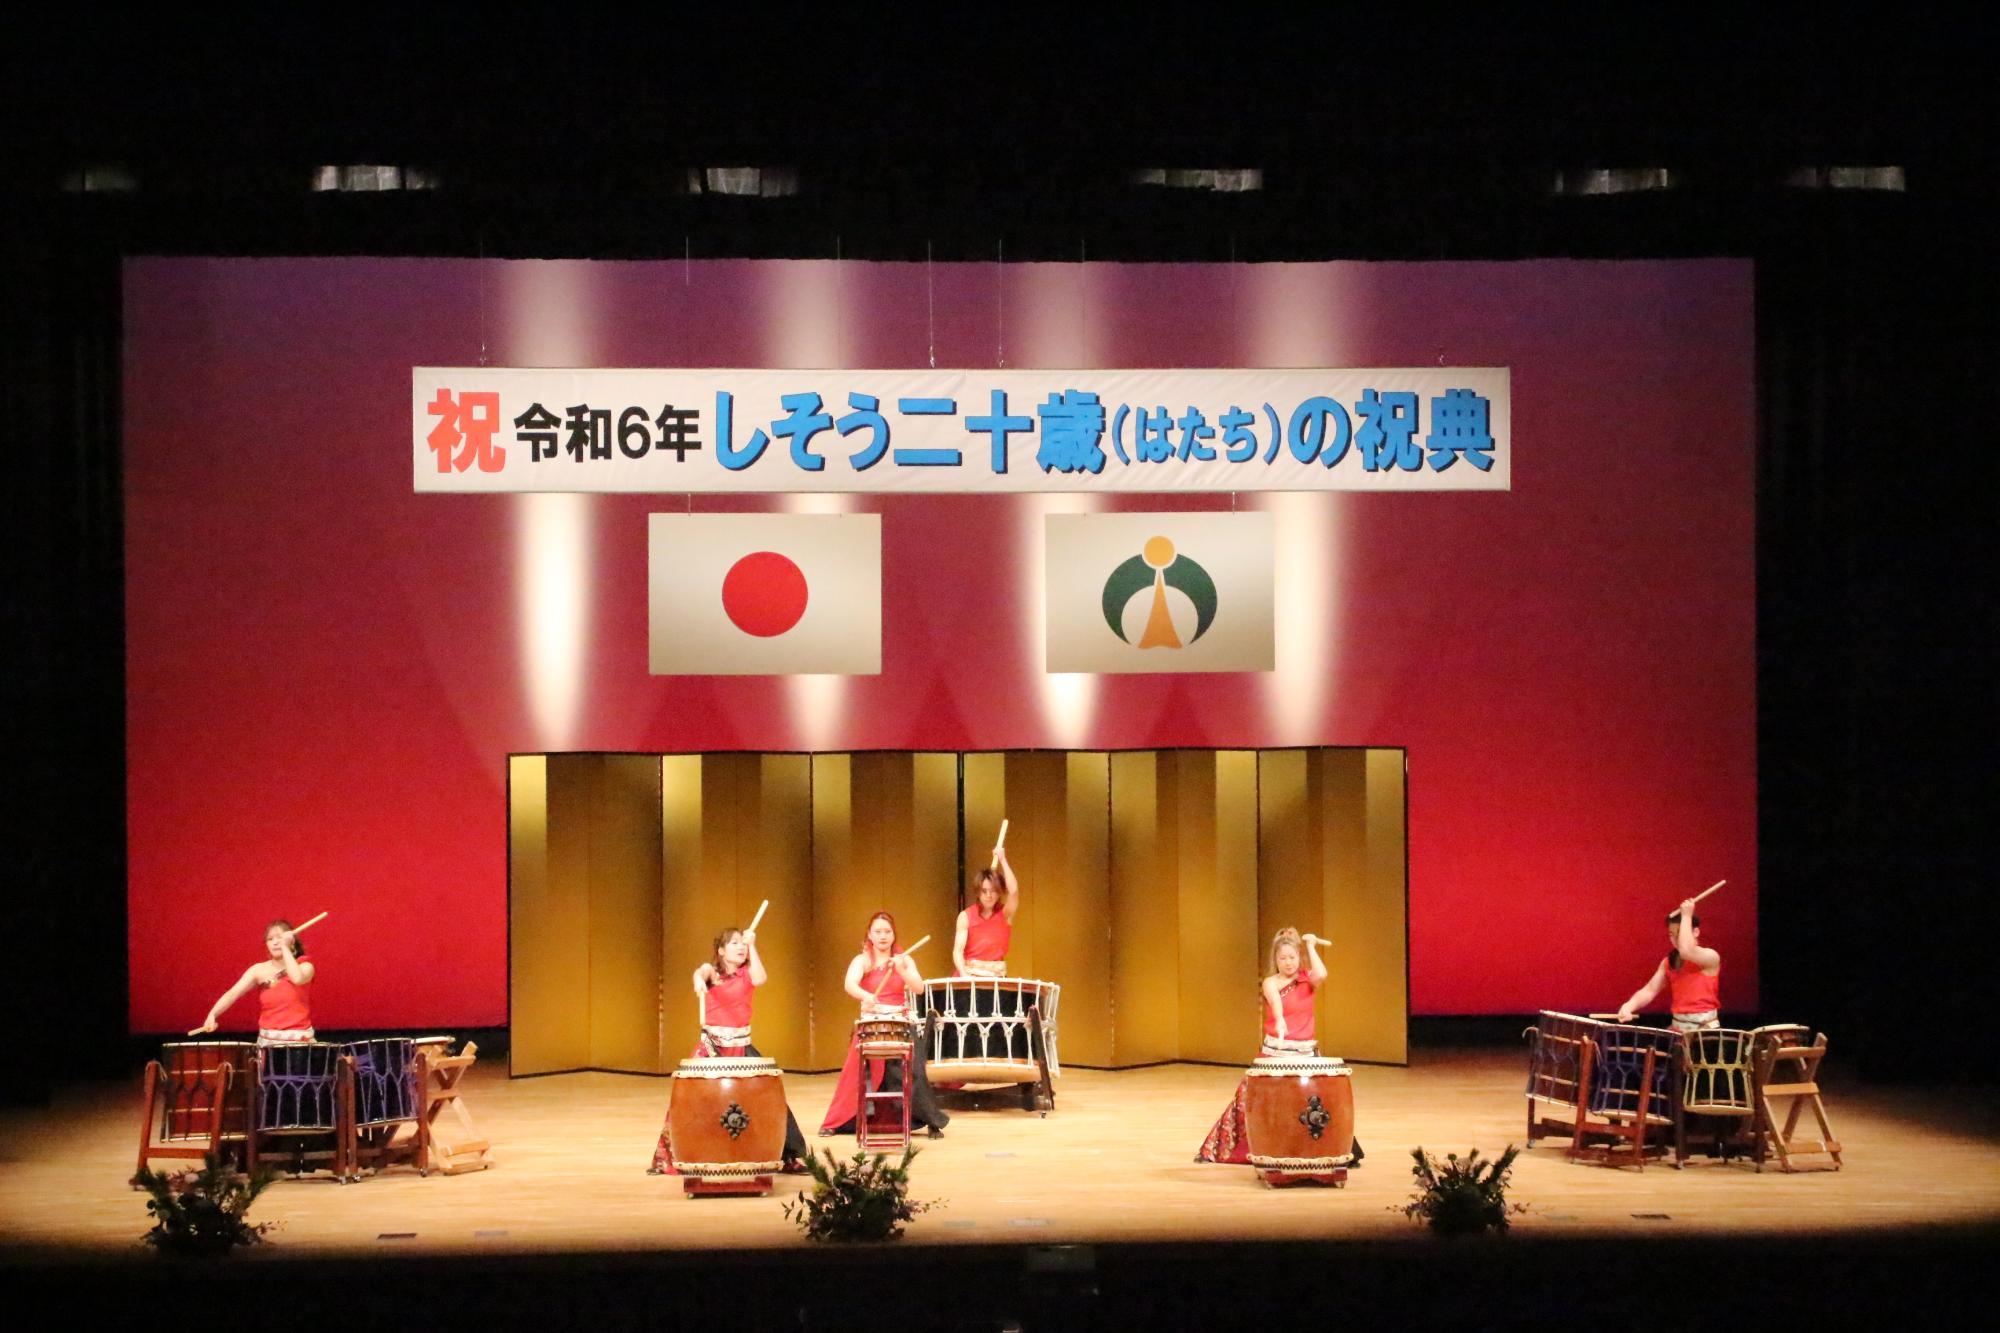 山崎文化会館のステージ上で新成人らを祝う和太鼓を披露する彈紅の写真